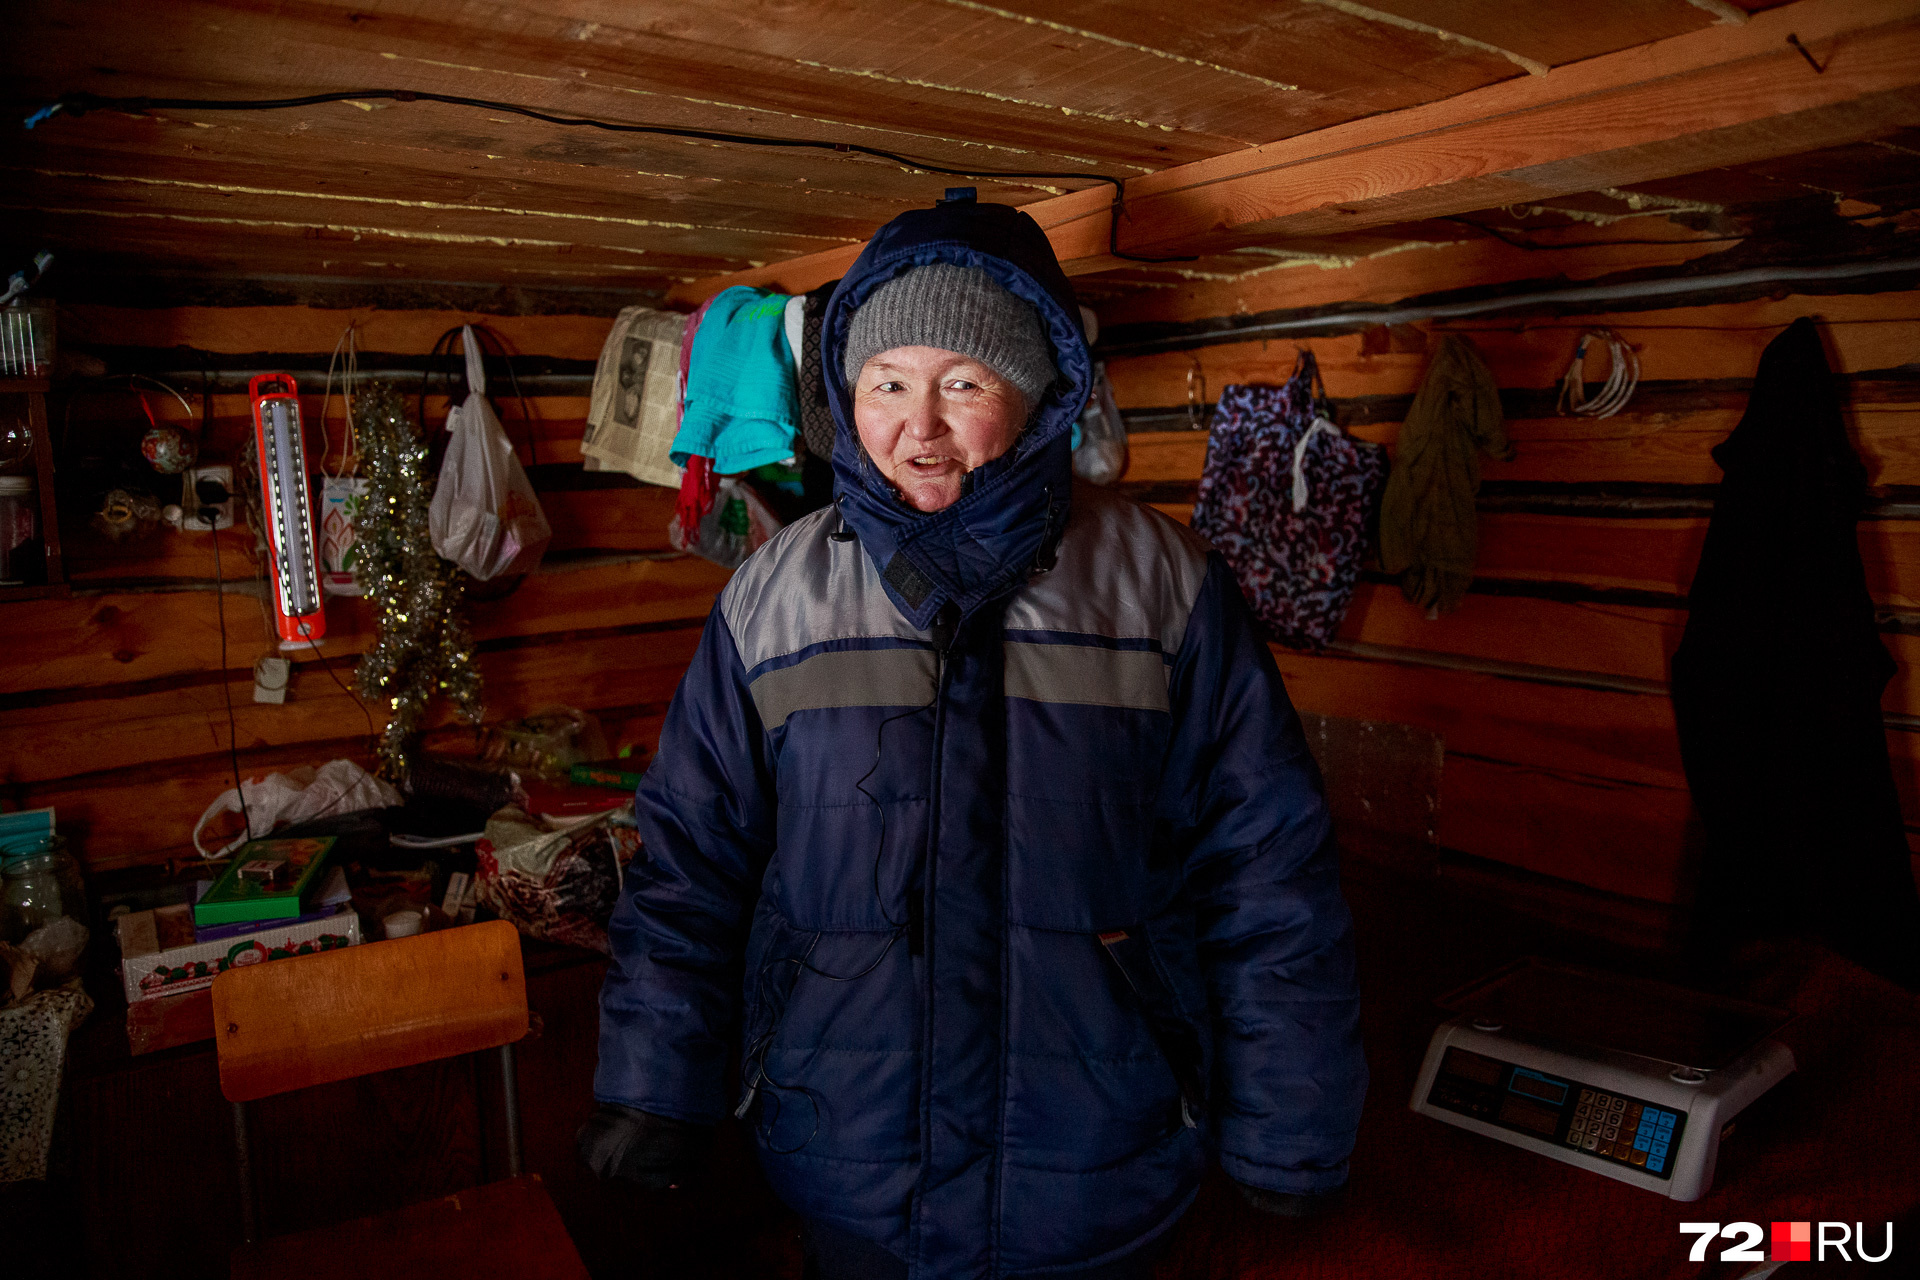 Джасиля Галиева приезжает торговать на рынок зимой из соседнего поселка. Сезонной торговлей она зарабатывает на жизнь